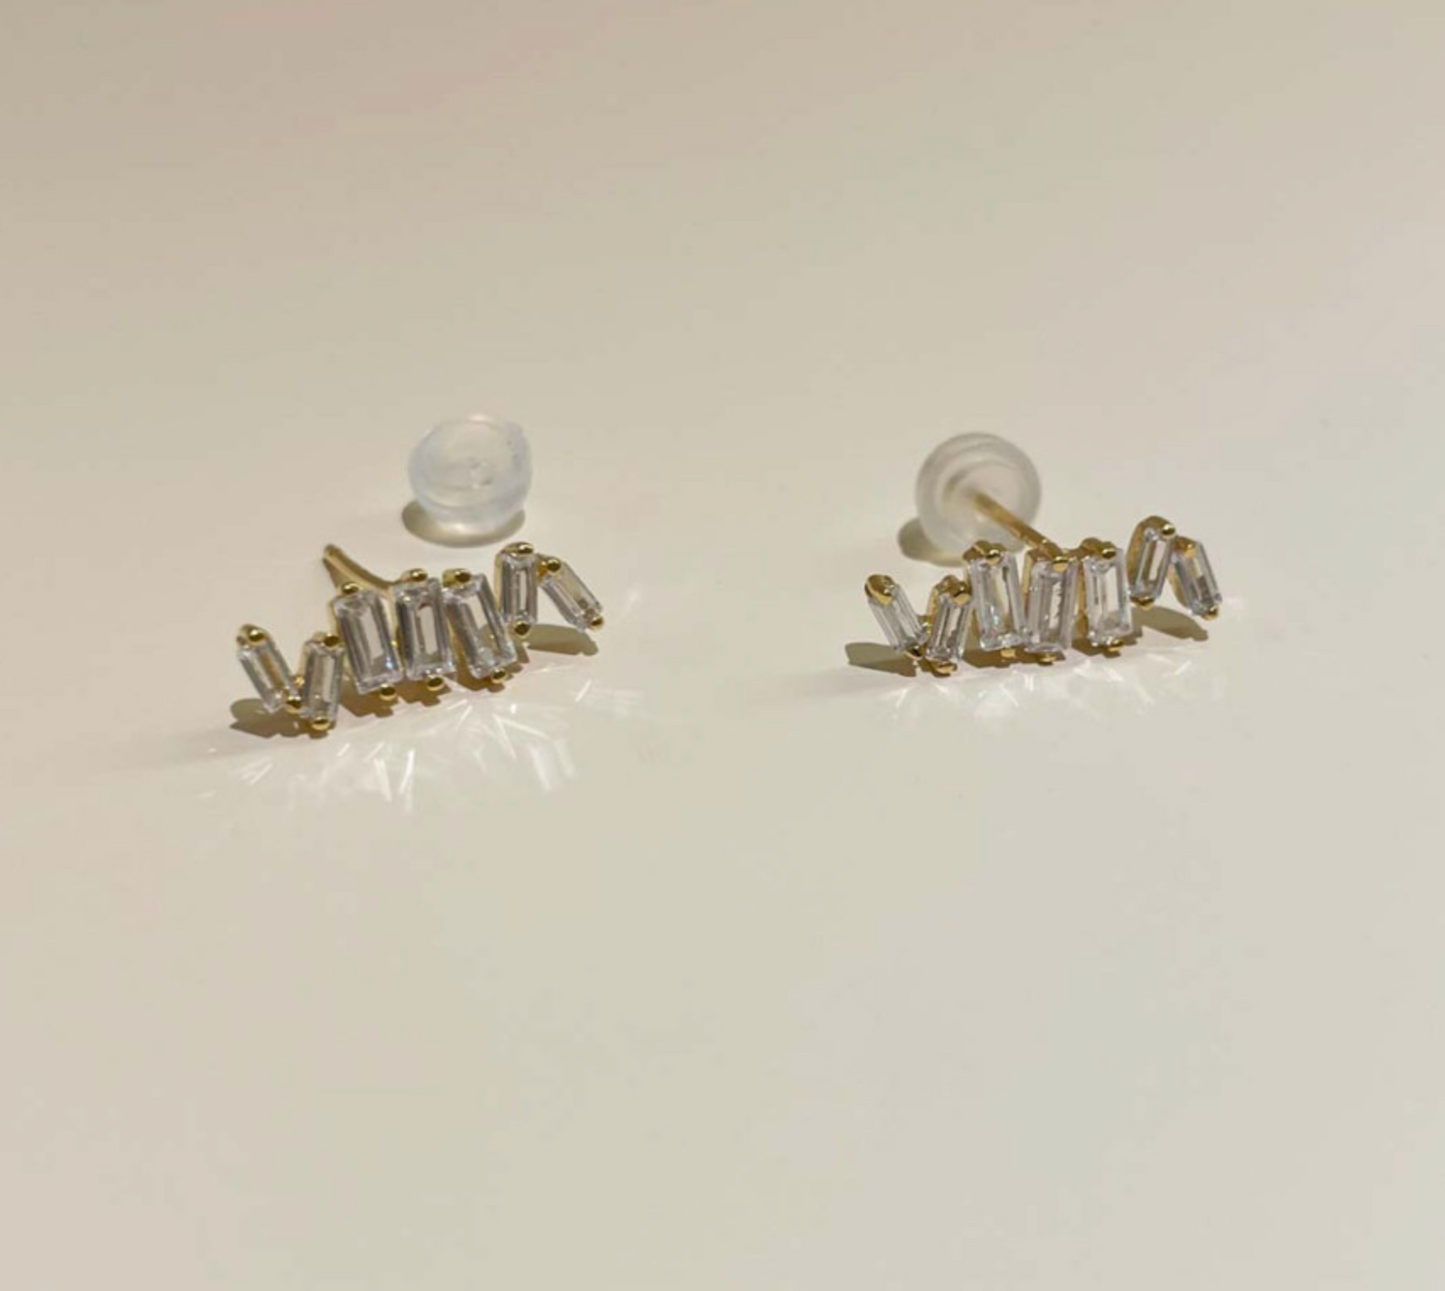 925 sterling silver Baguette Cut square Cubic Zirconia earrings,  Cubic Zirconia Baguette square earrings,Cubic Zirconia detailed Baguette stud earrings,Baguette CZ bar earrings, simple earrings